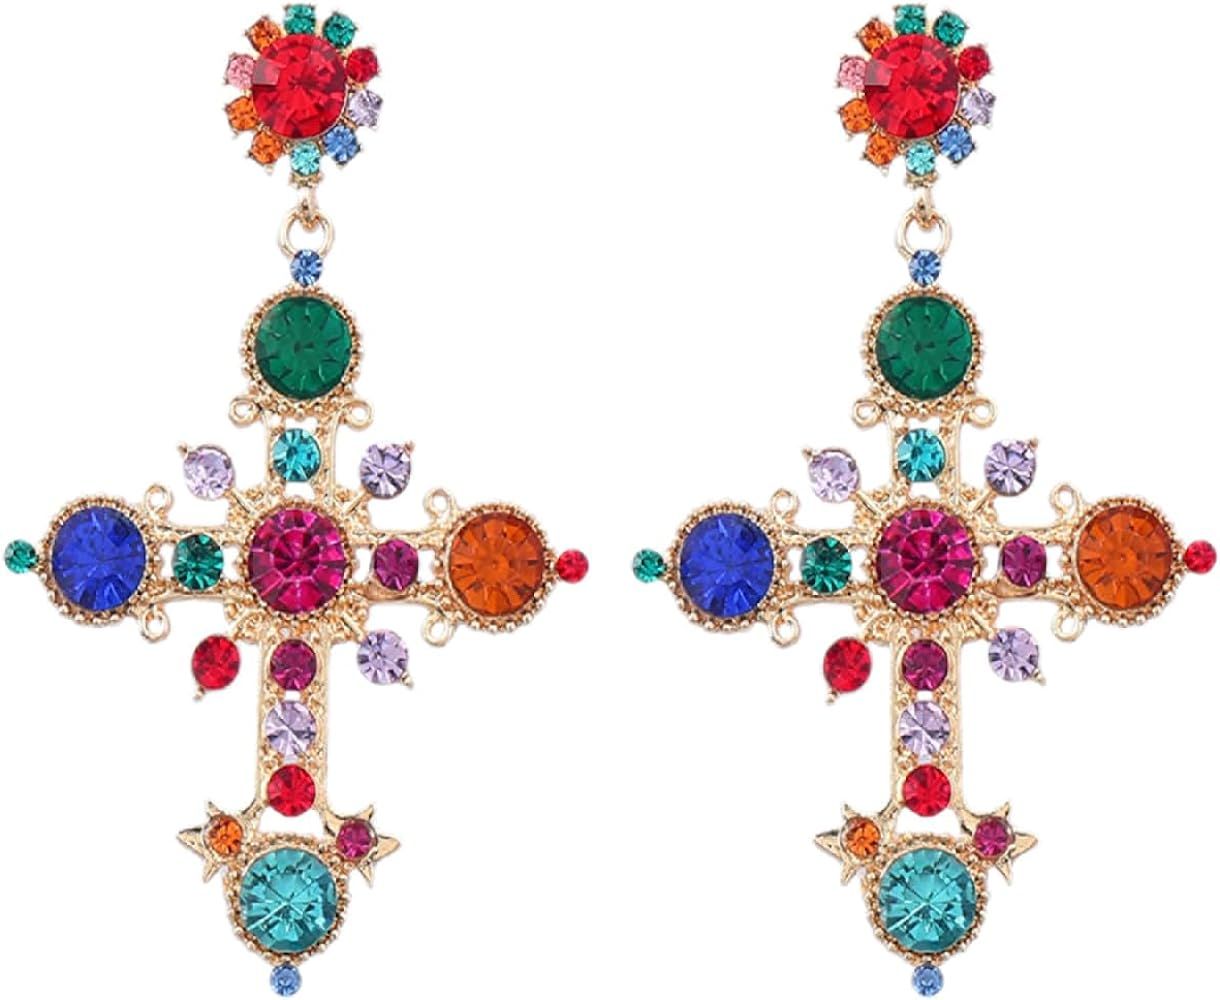 Gold Cross Dangling Earrings for Women, Rhinestone Cross Earrings Pearl Cross Earrings Colorful Crystal Earrings Baroque Big Earrings Party Jewelry | Amazon (US)